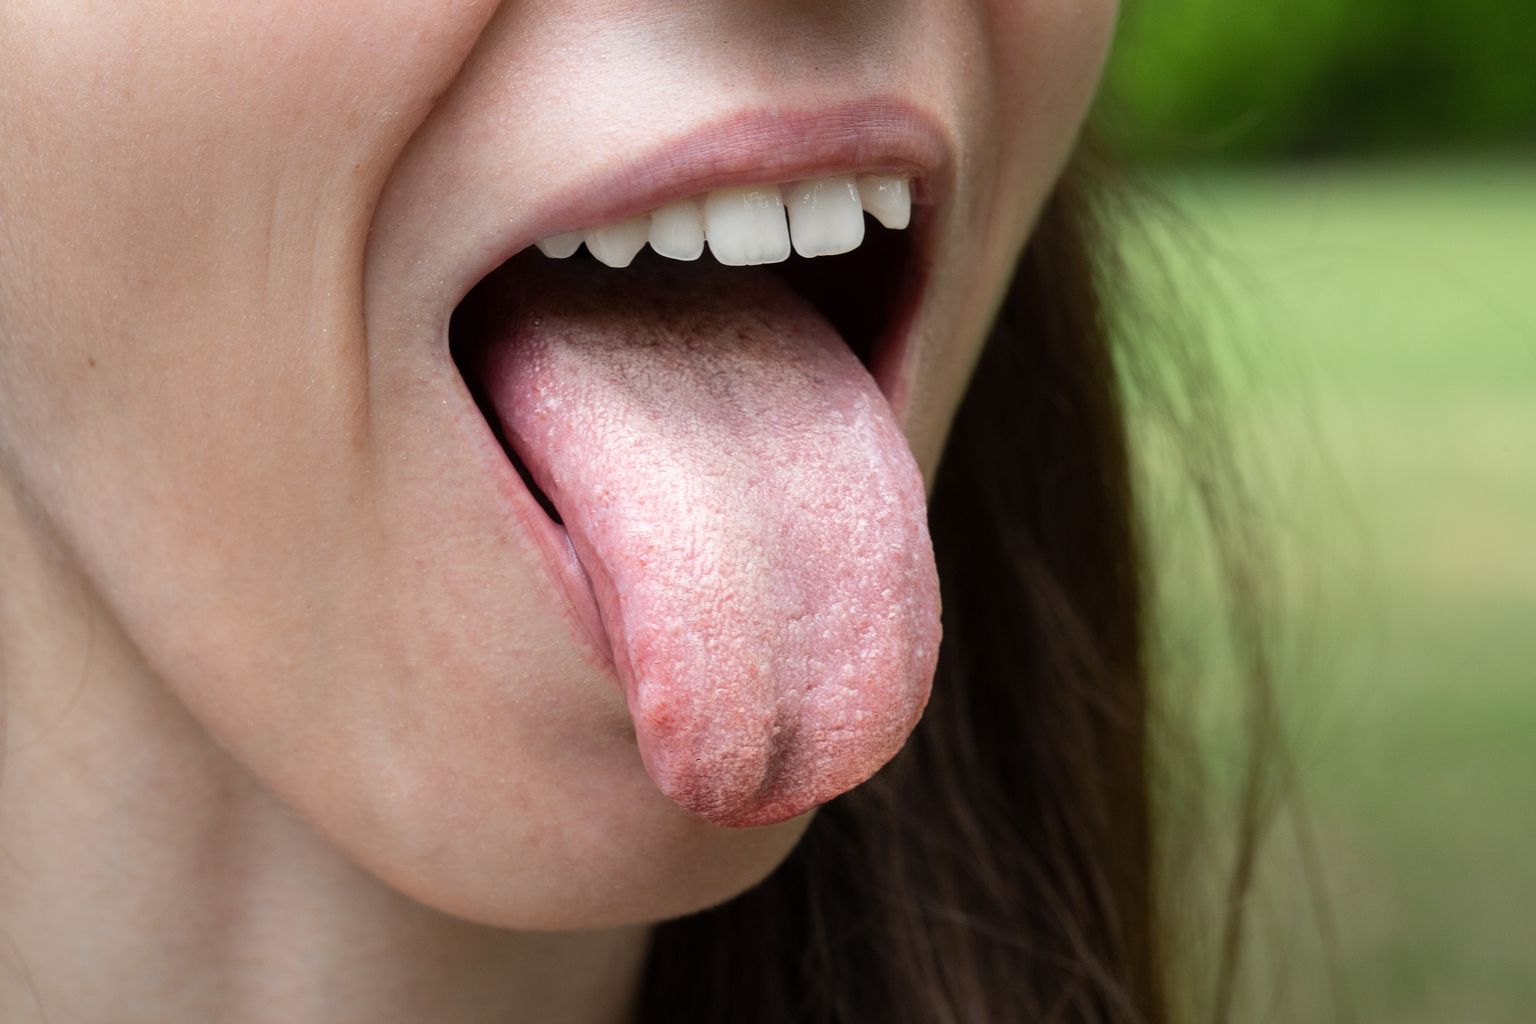 Разрастание Candida вызывает кандидоз. Кандидоз полости рта характеризуется неприятным привкусом и покраснением и жжением во рту, белым налетом на языке, покалыванием слизистых оболочек, а также может вызвать язву в уголке рта.